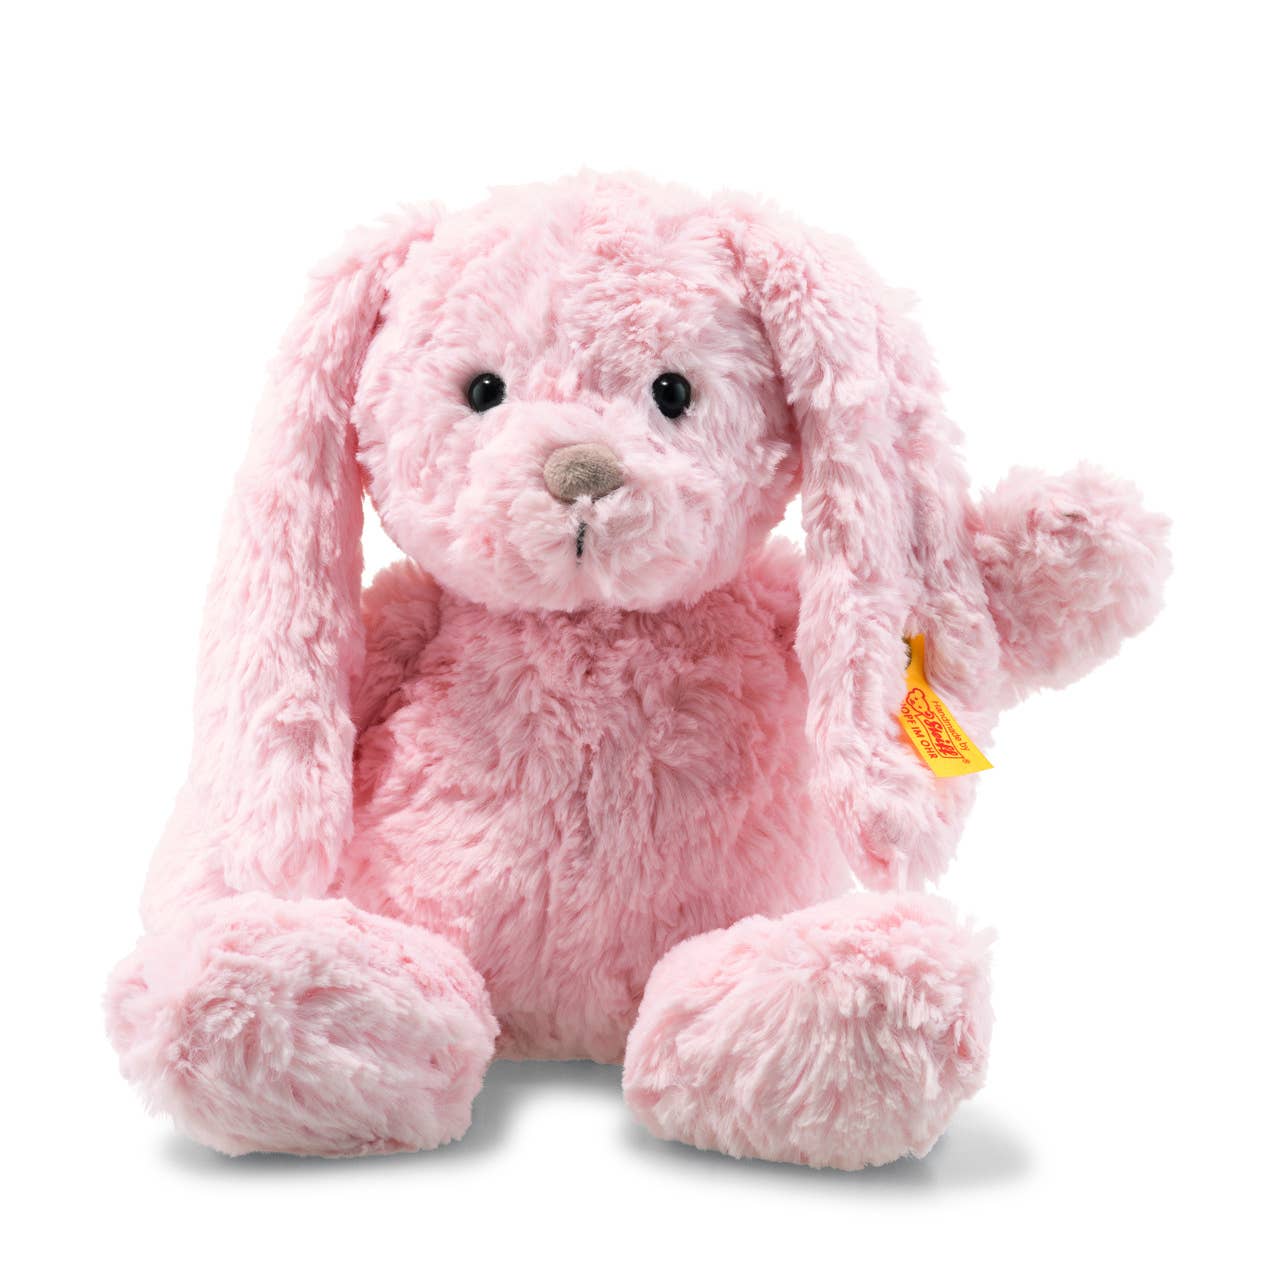 Tilda Rabbit Bunny Plush Stuffed Toy, 12 Inches